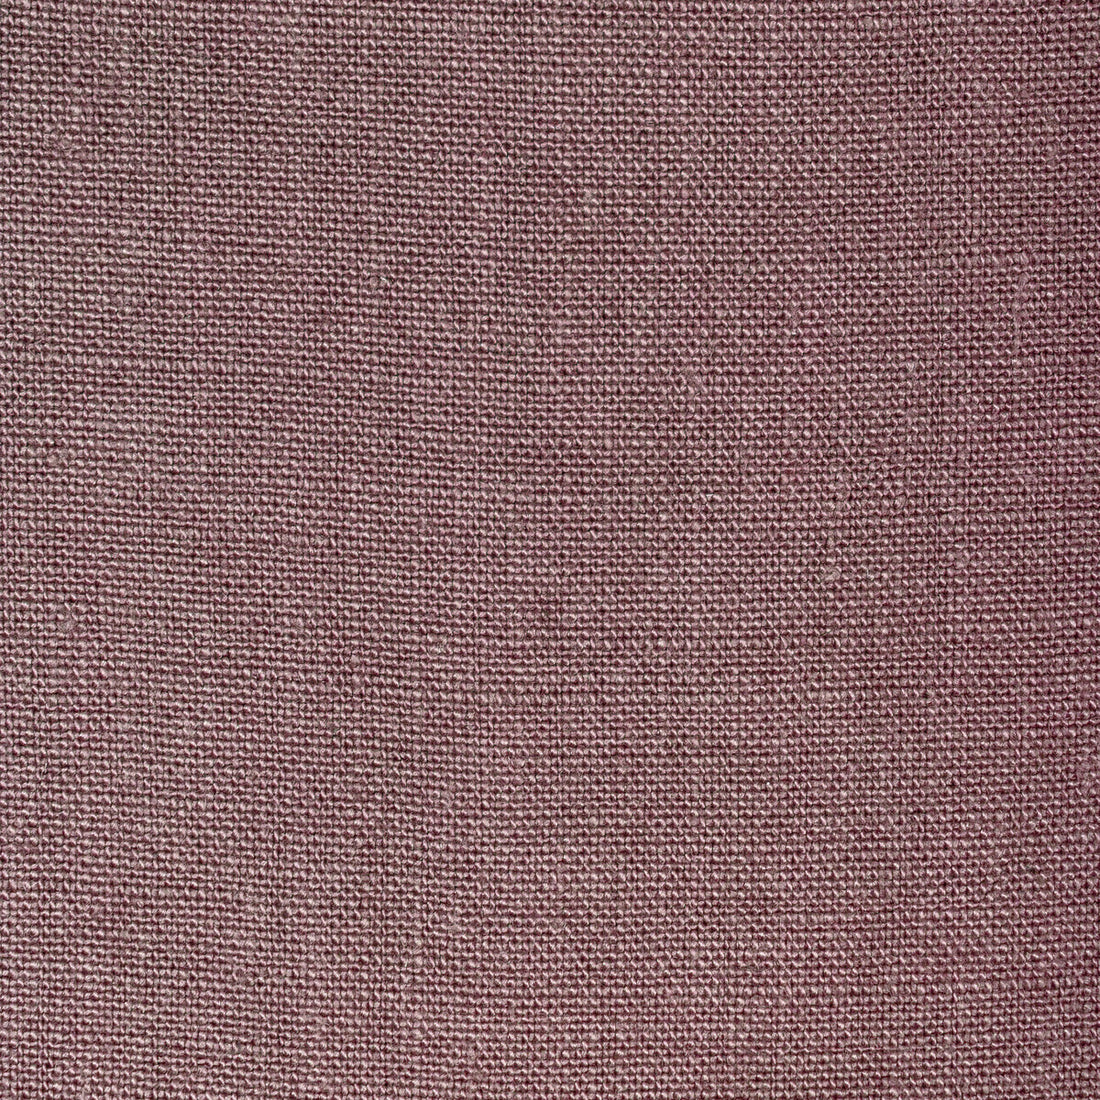 Kravet Basics fabric in 36332-10 color - pattern 36332.10.0 - by Kravet Basics